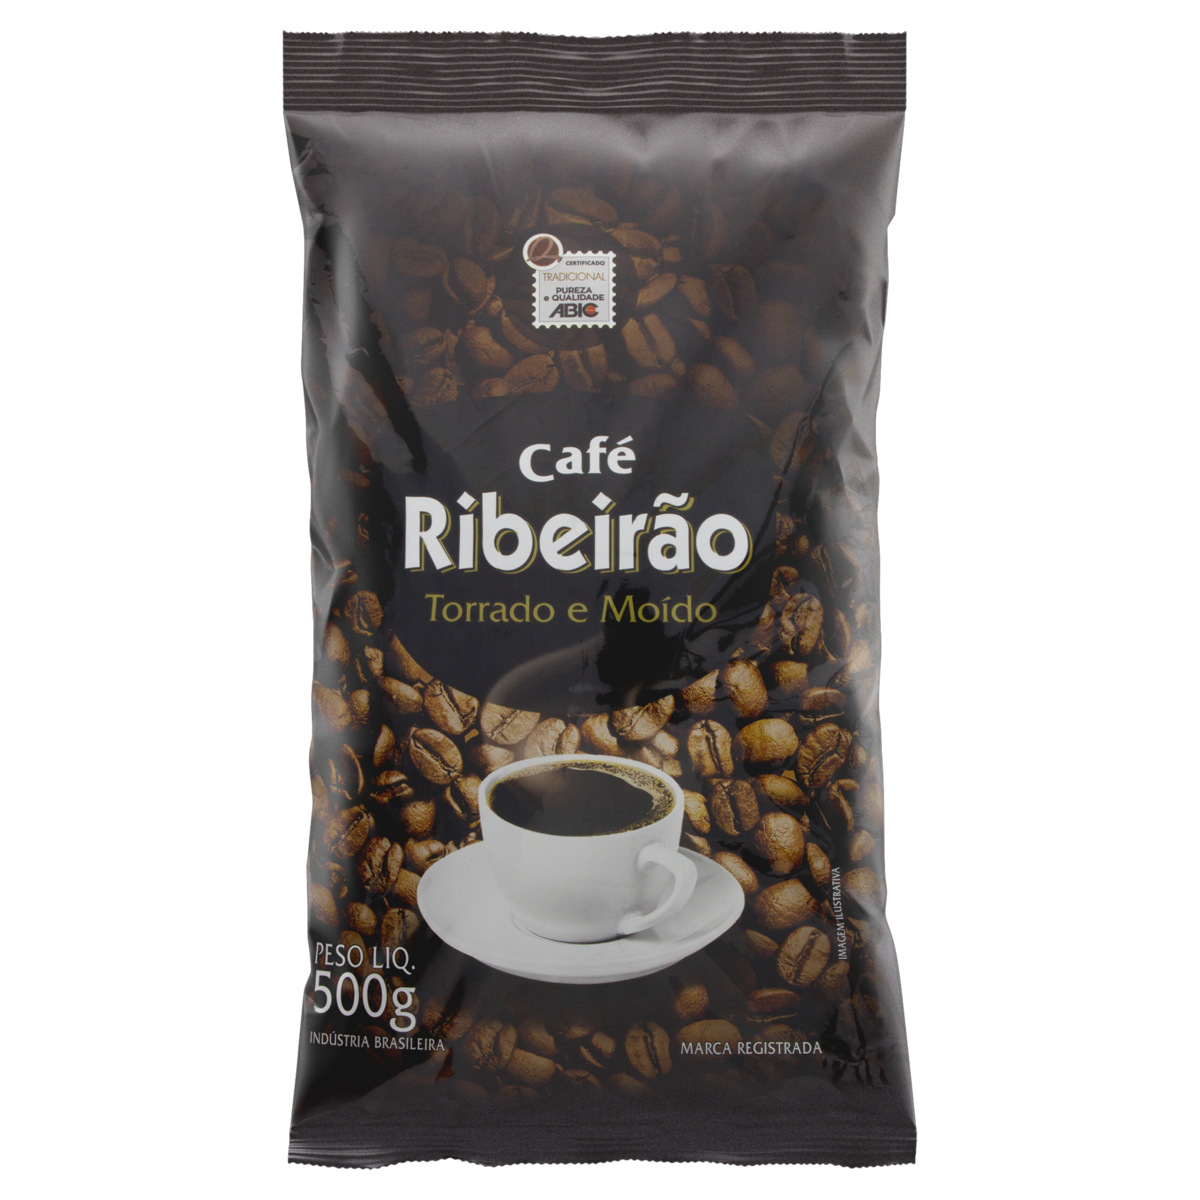 7896656800032 - CAFÉ TORRADO E MOÍDO TRADICIONAL RIBEIRÃO PACOTE 500G